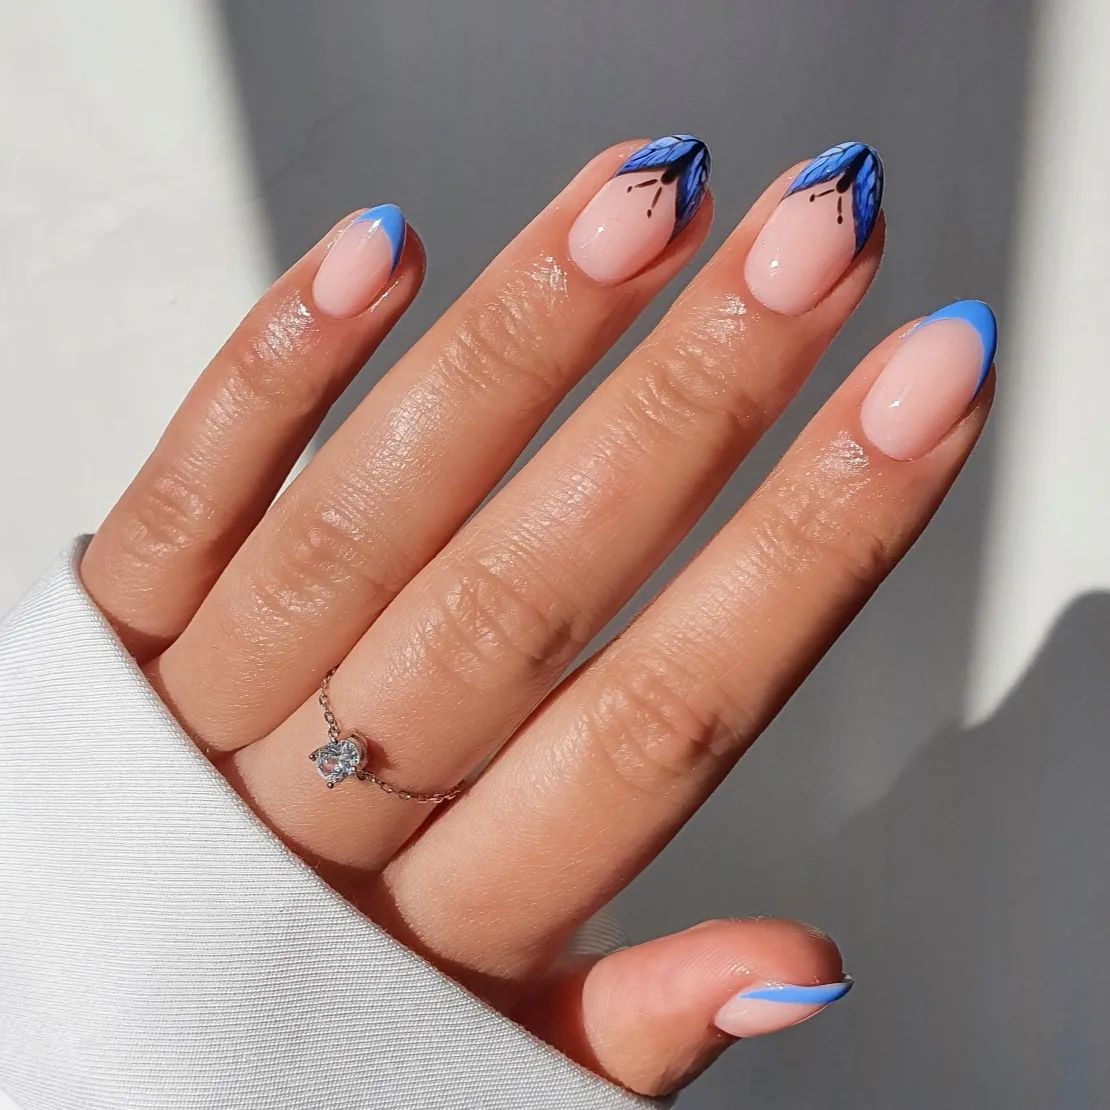 Korte nagels met blauw vlinderontwerp op tips